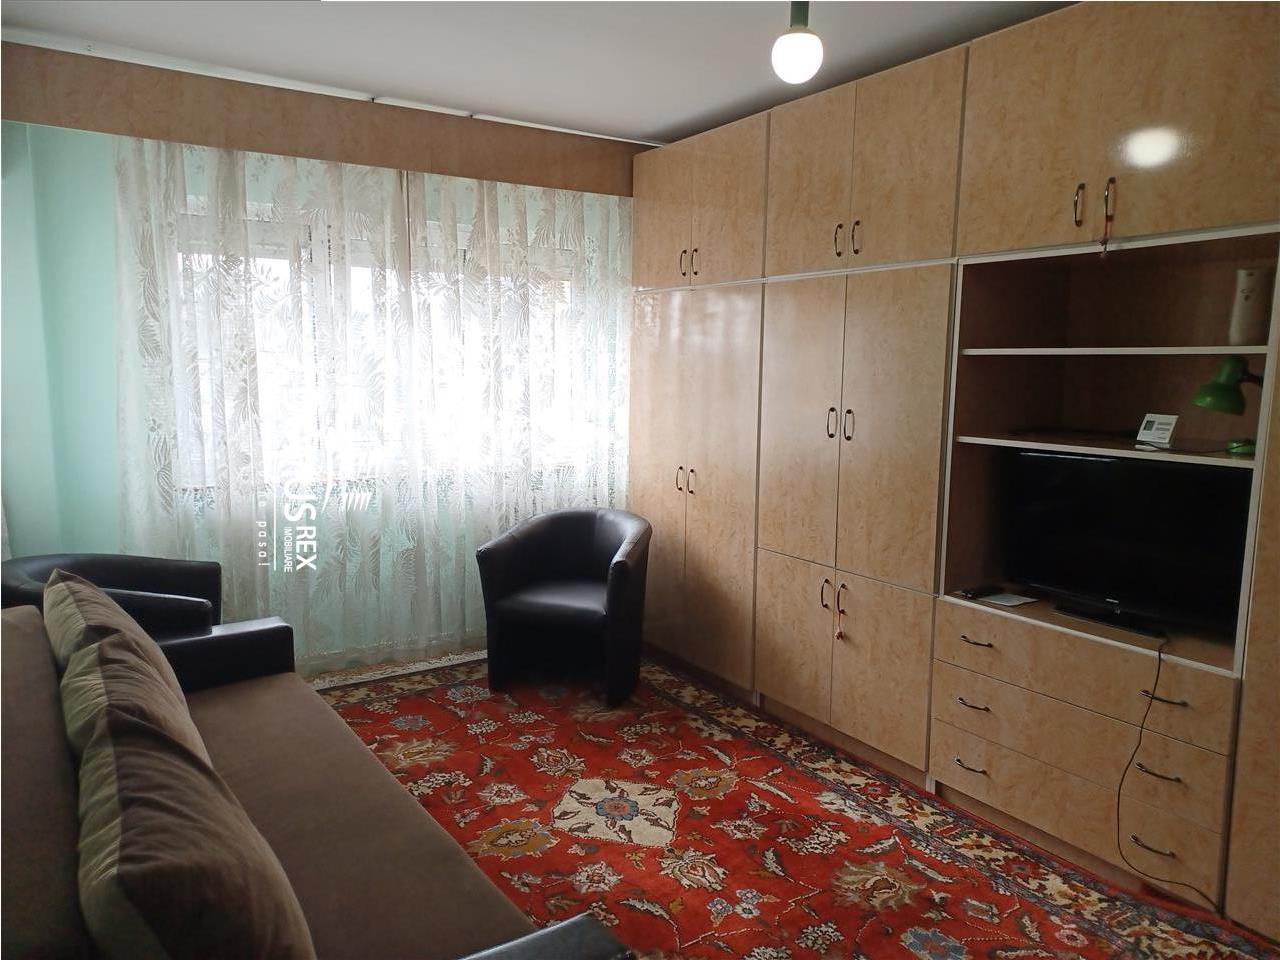 Apartament cu 1 camera, cu centrala termica, Pta Marasti